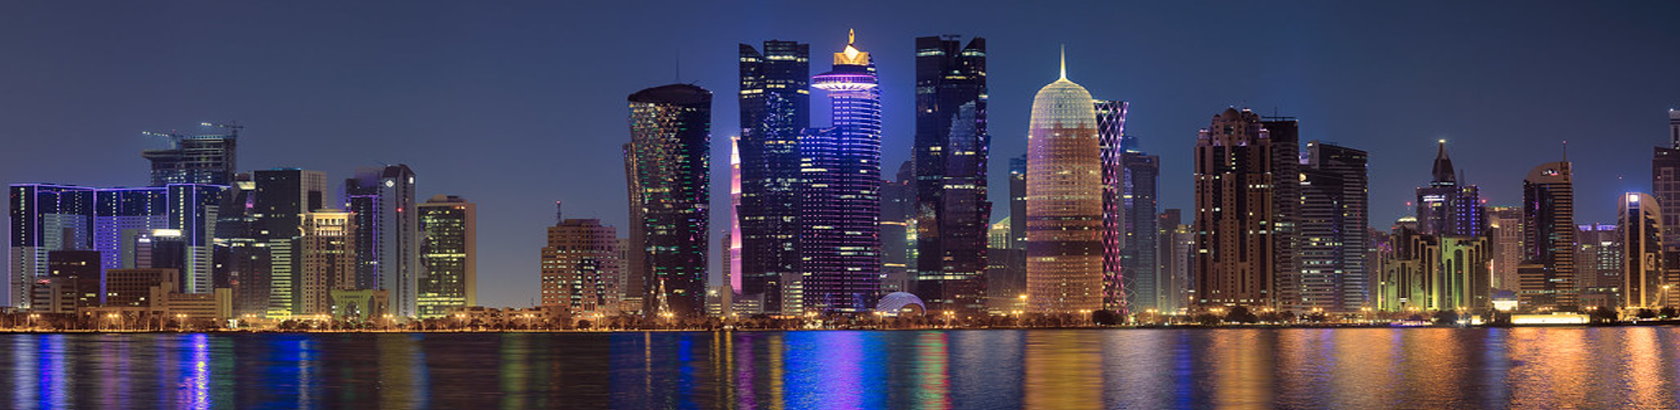 5 Star Qatar Hotels